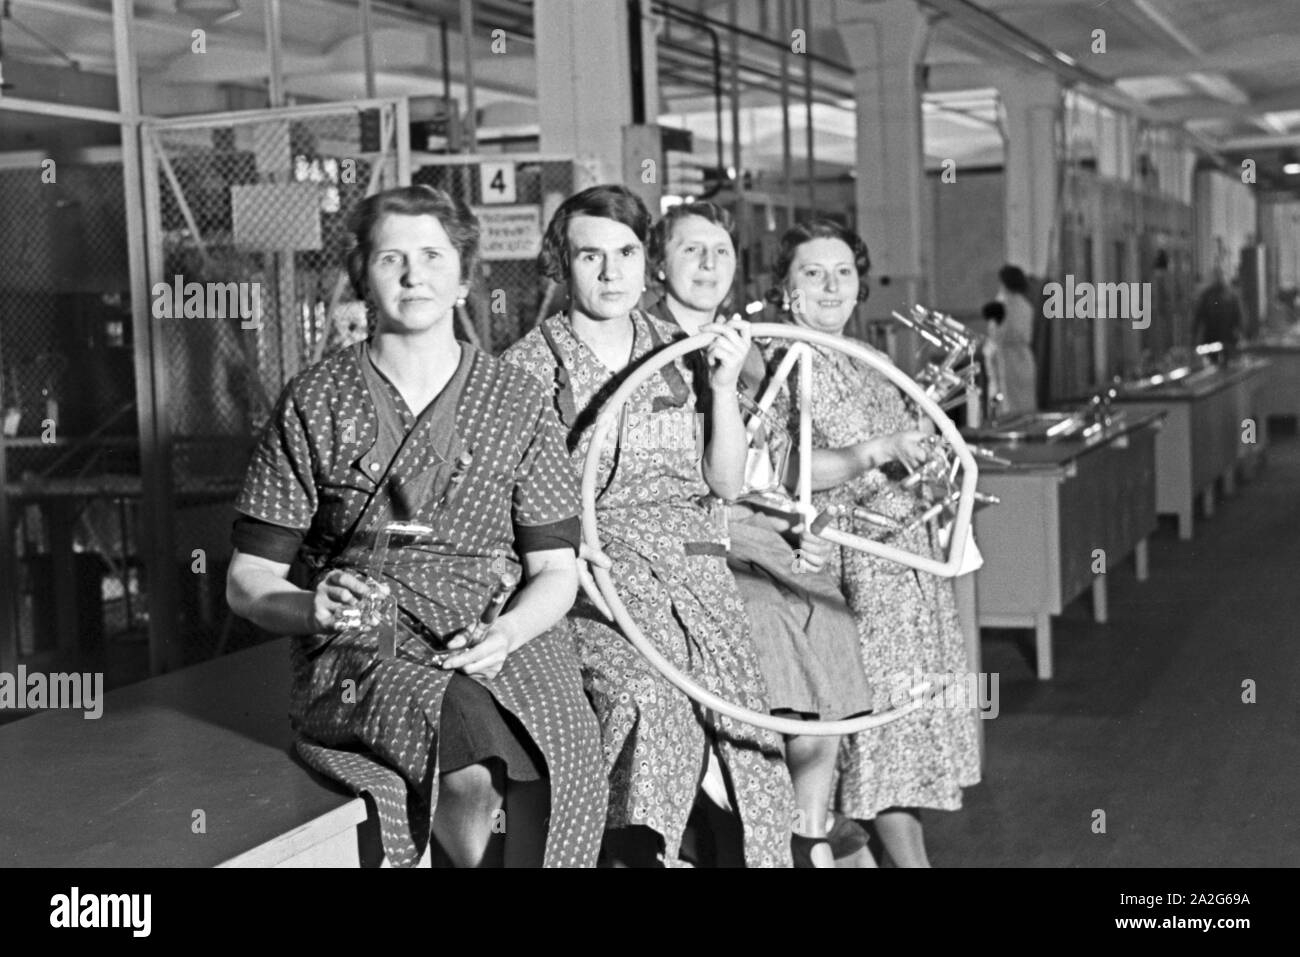 Mitarbeiterinnen einer Leuchtröhrenfabrik Mit einem ihrer Produkte, Deutschland 1930er Jahre. Personale femminile membri di tubi fluorescenti producendo la fabbrica con uno dei loro prodotti, Germania 1930s. Foto Stock